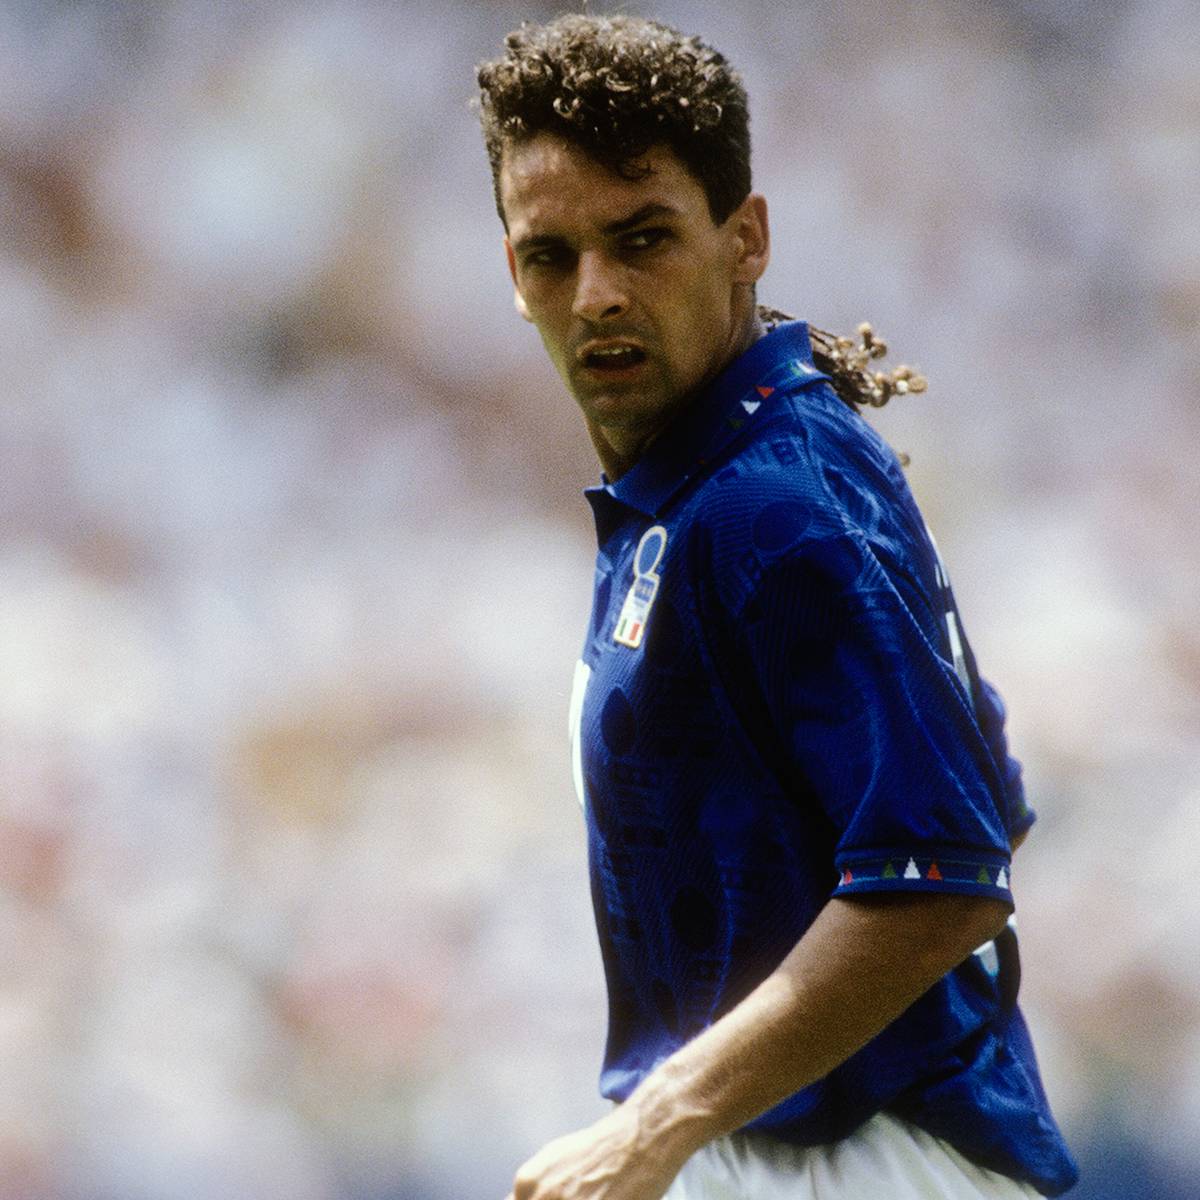  "Das göttliche Zöpfchen": Wie gut war eigentlich Roberto Baggio?